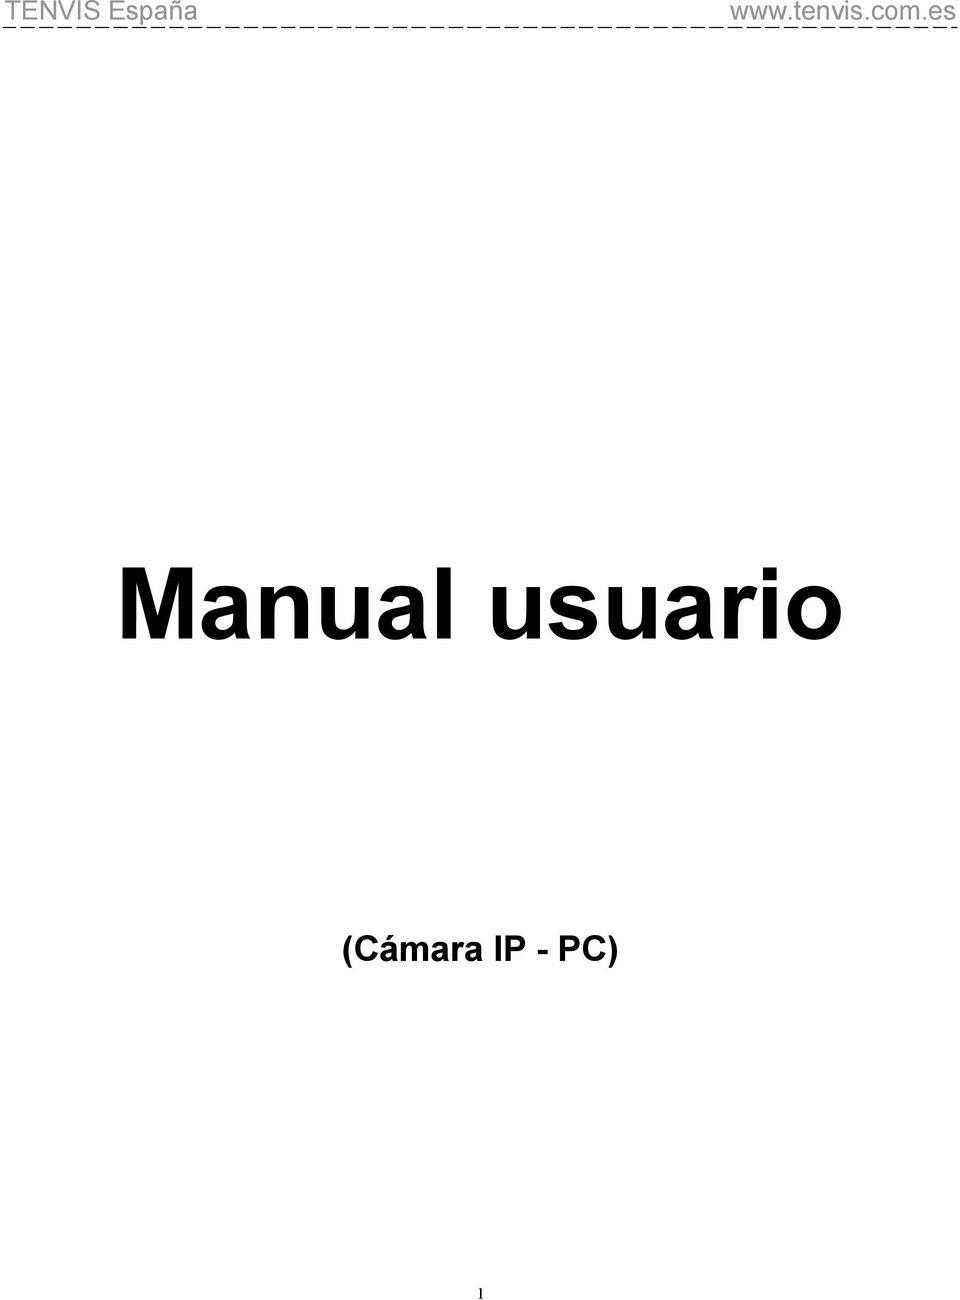 Característica Odio Groseramente Manual usuario (Cámara IP - PC) - PDF Descargar libre